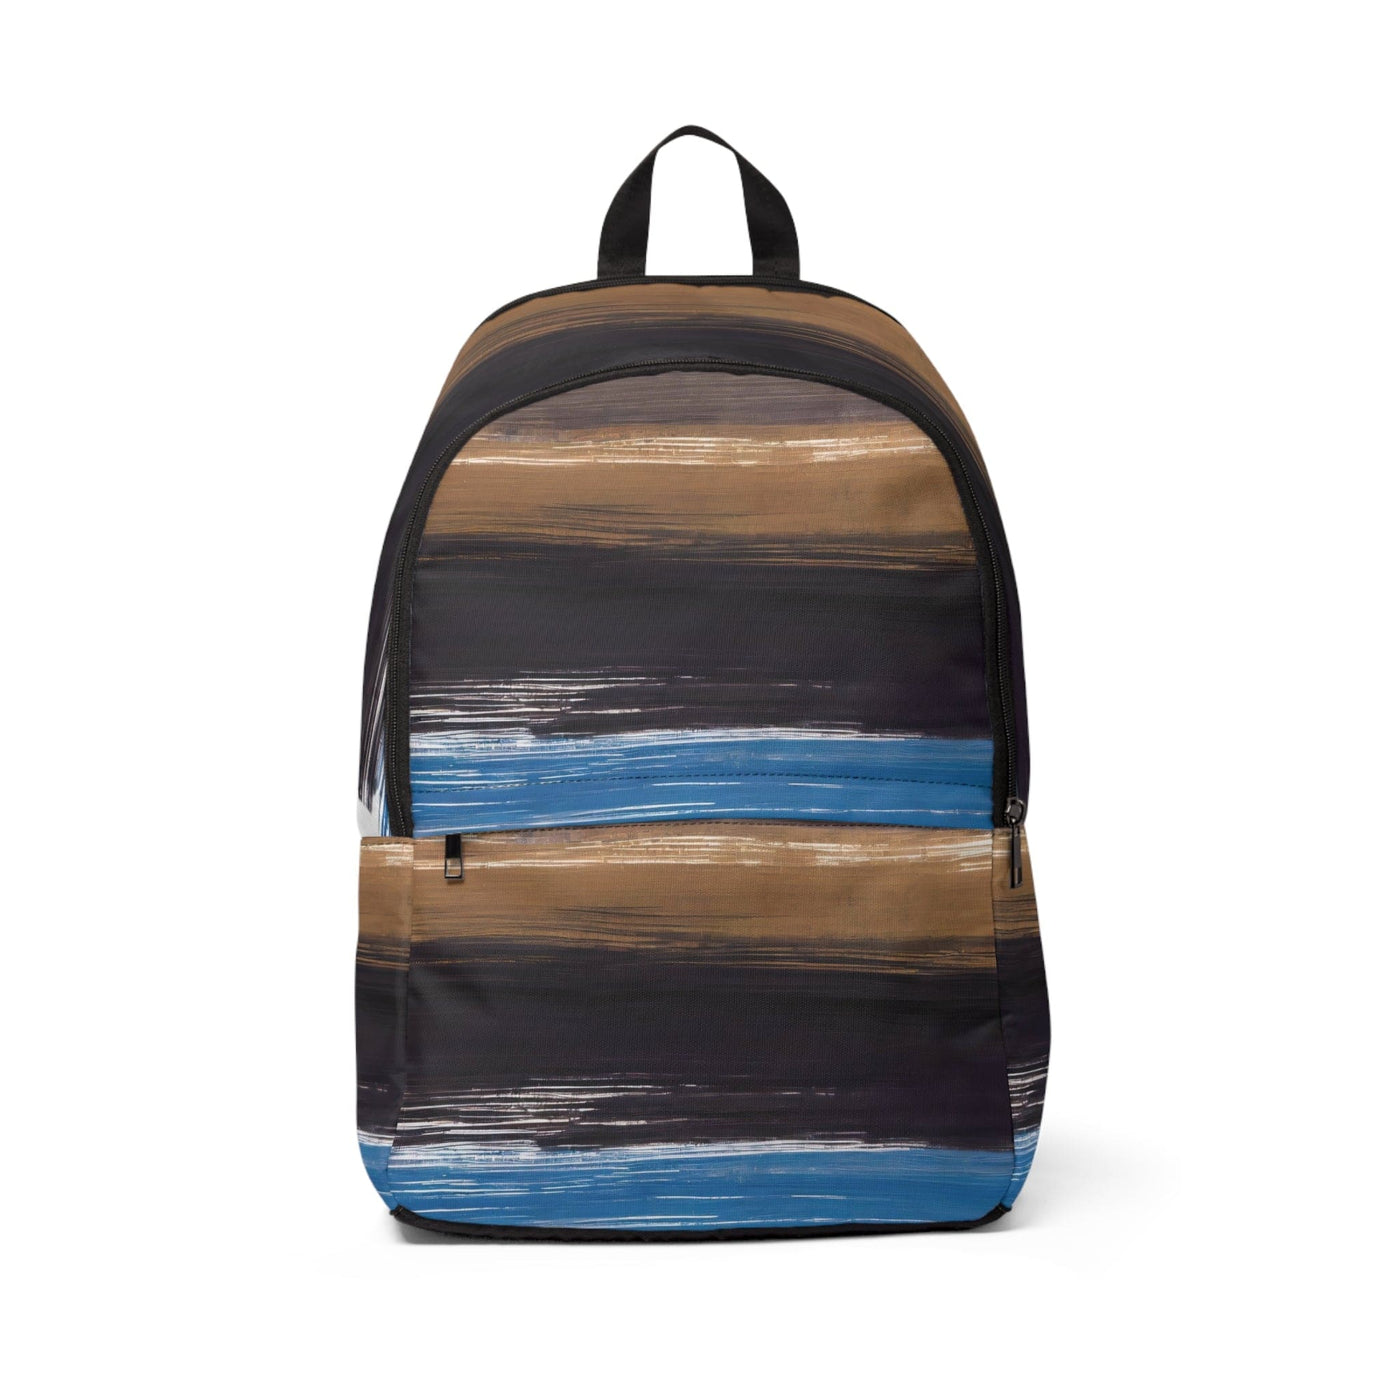 Fashion Backpack Waterproof Rustic Purple Brown Design - Bags